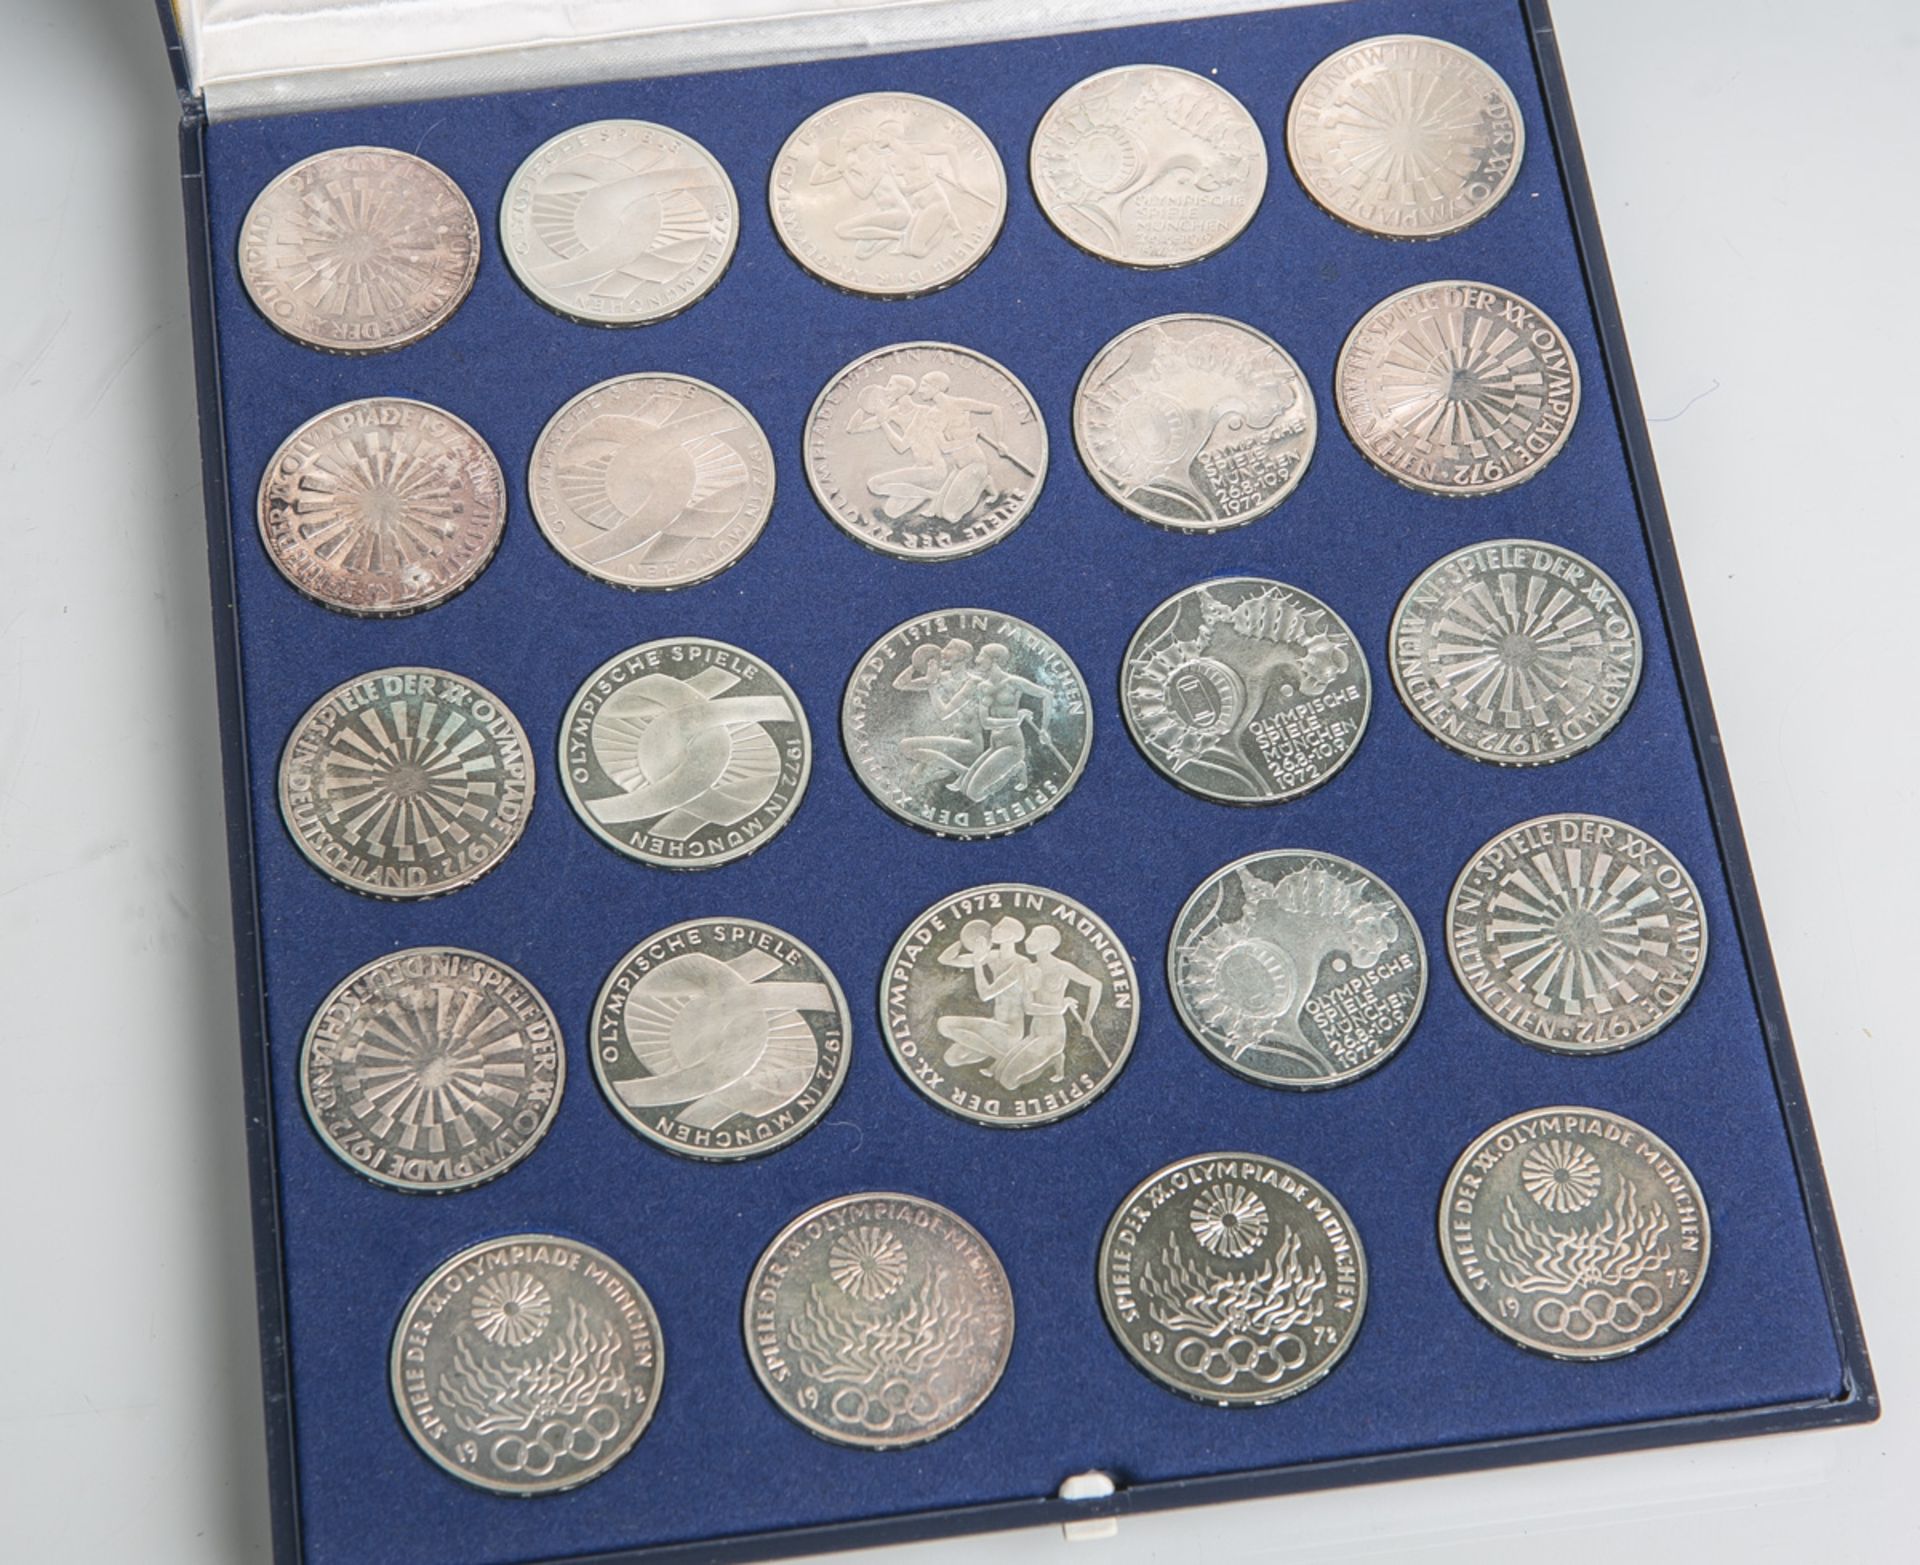 5 Gedenkmünzsätze 10 DM (BRD), Olympiade München 1972, 625 Silber, 24 Stück, Dm. ca. 32,5mm, Gewicht